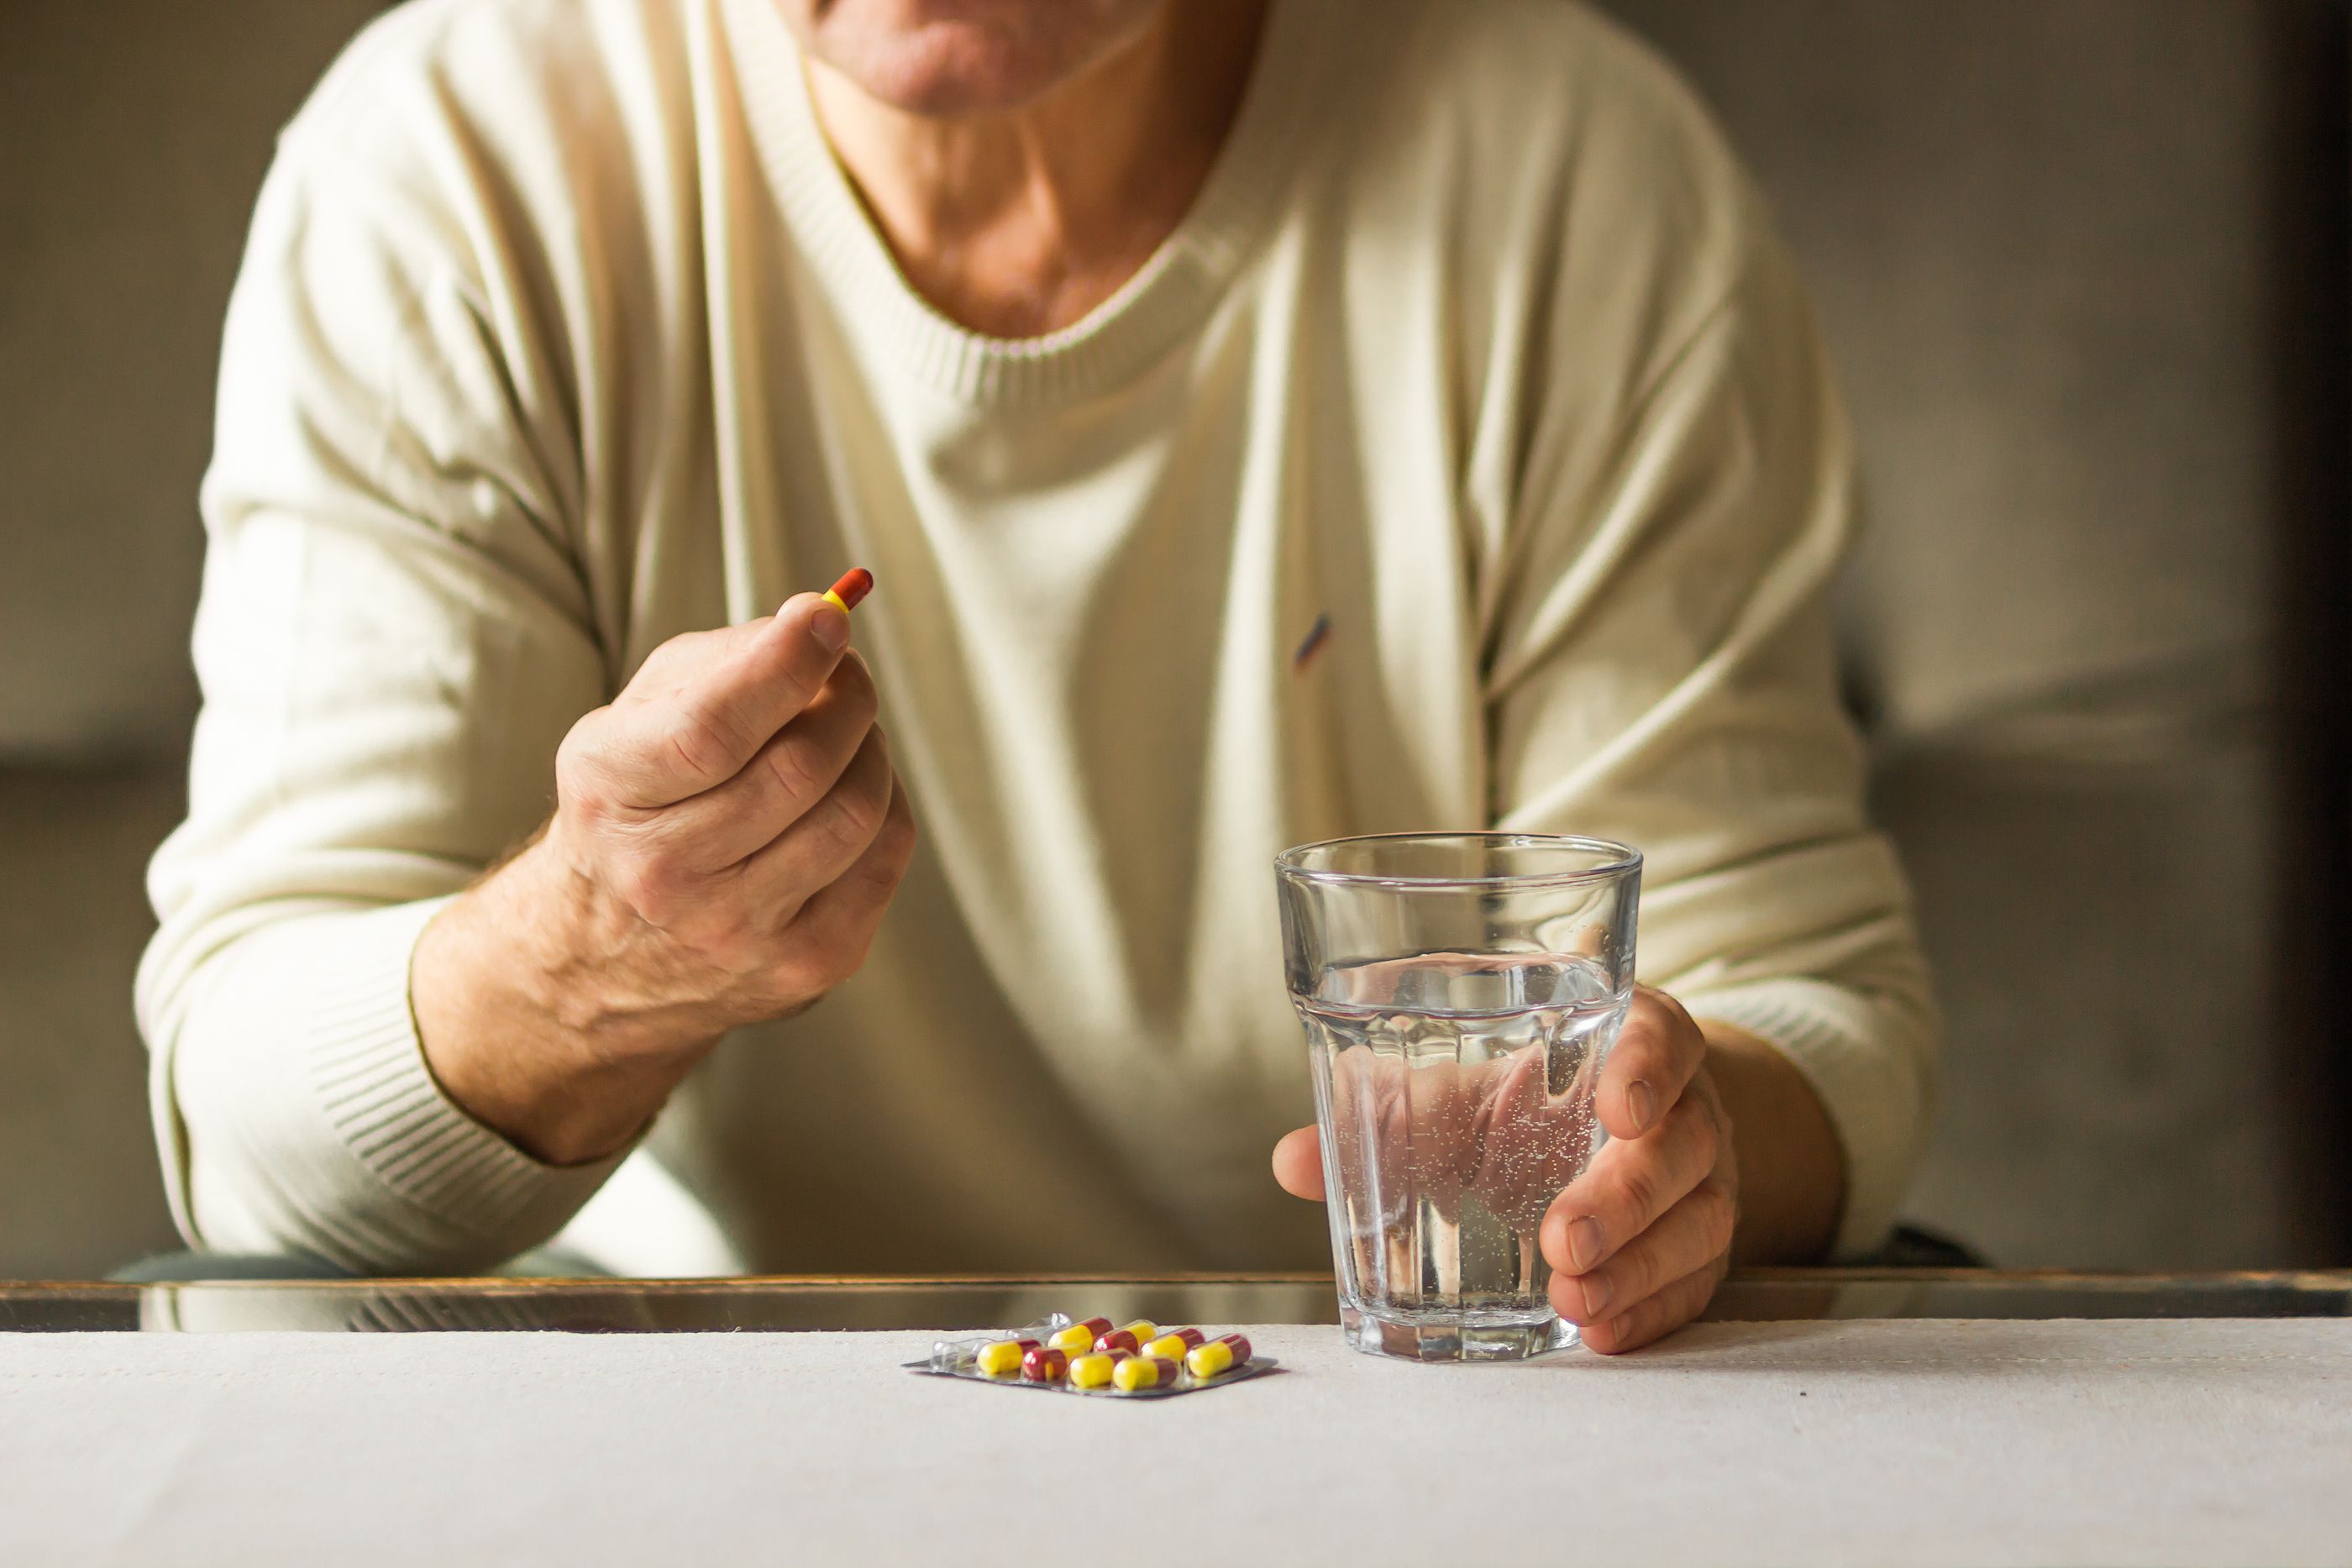 Estos son los medicamentos más comunes que provocan efectos secundarios. Foto: Bigstock